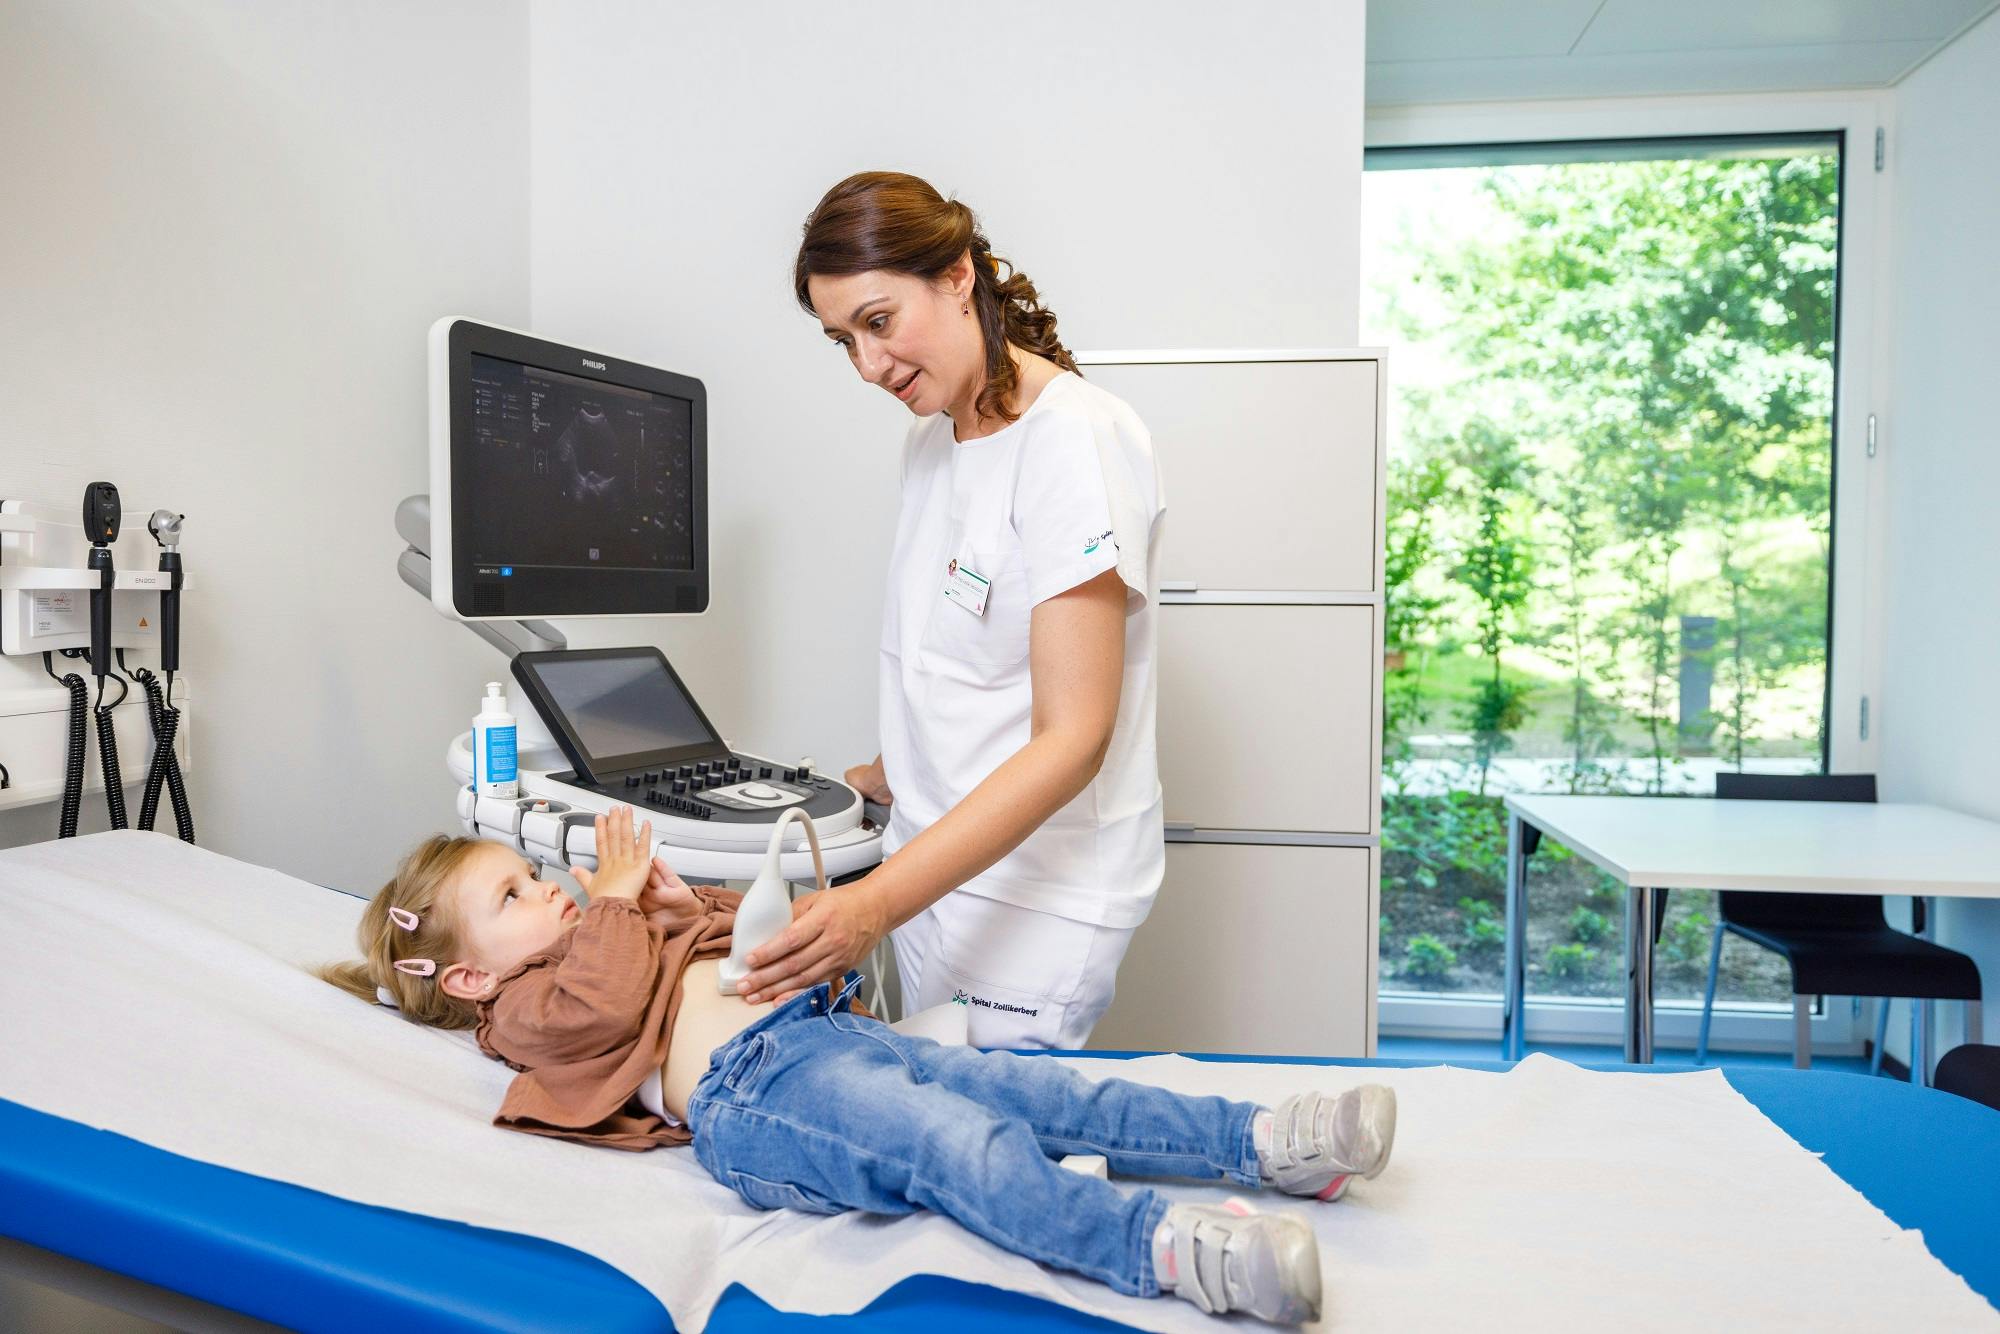 Ultraschalluntersuchung eines Kindes durch eine medizinische Fachkraft in einer Klinik.